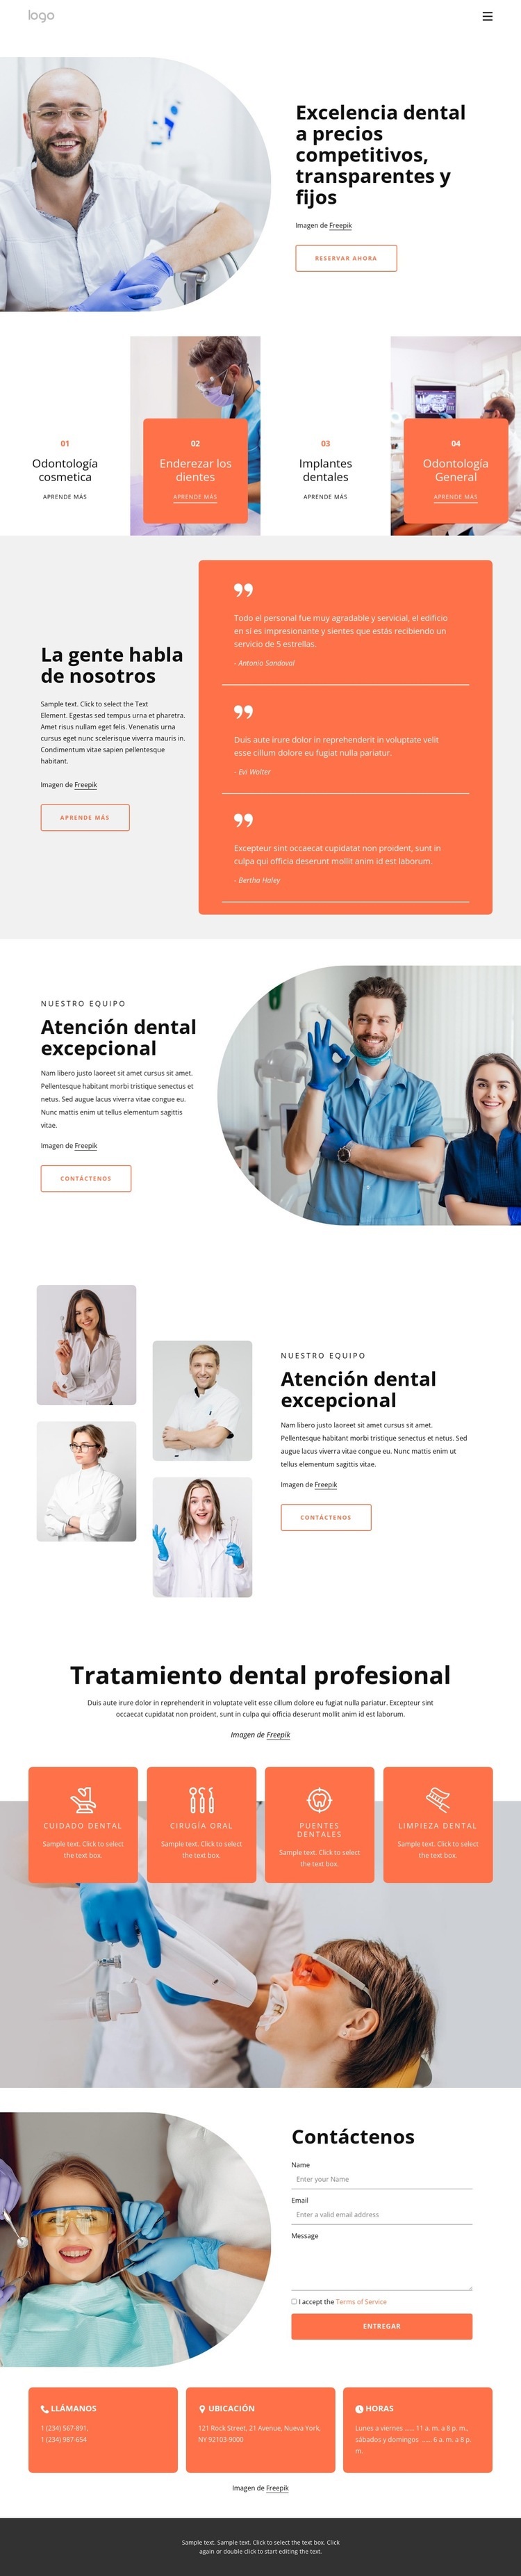 Excelencia dental Plantilla HTML5